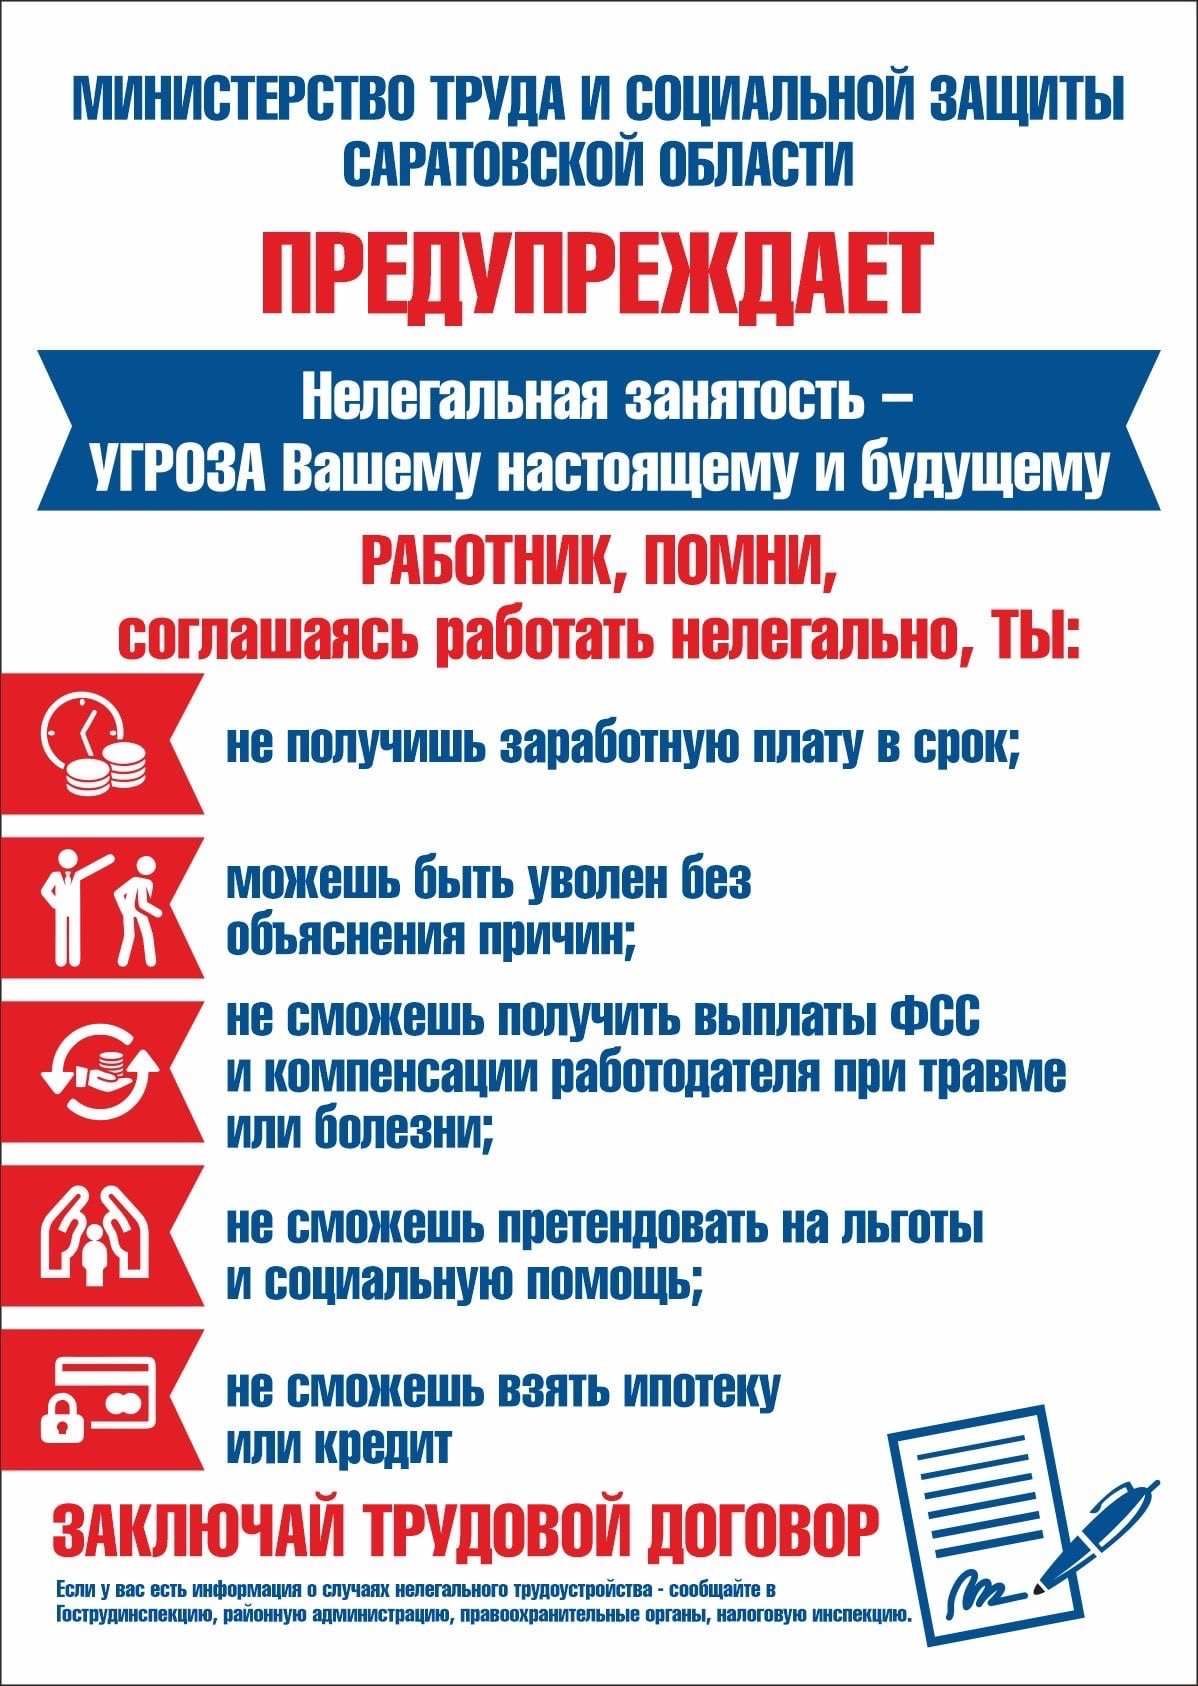 В Саратовской области проводится месячник противодействия нелегальной занятости